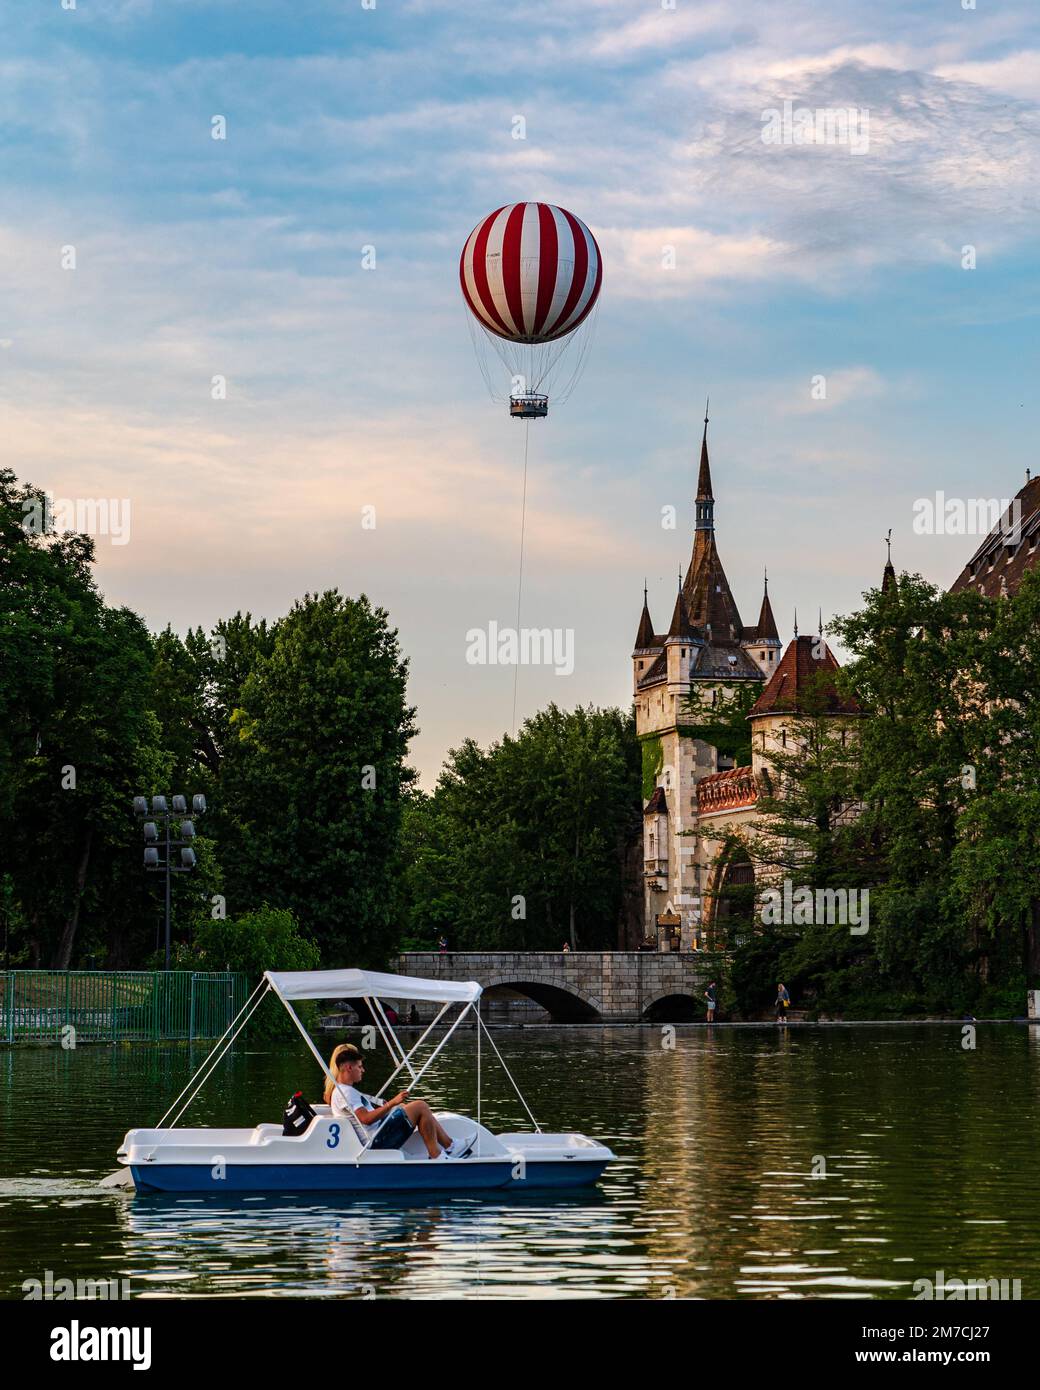 Nouvelle attraction touristique à Budapest Hongrie. La montgolfière se trouve sur le parc de la ville de Budapest. Près du célèbre château de Vajdahunyad et de flo Banque D'Images